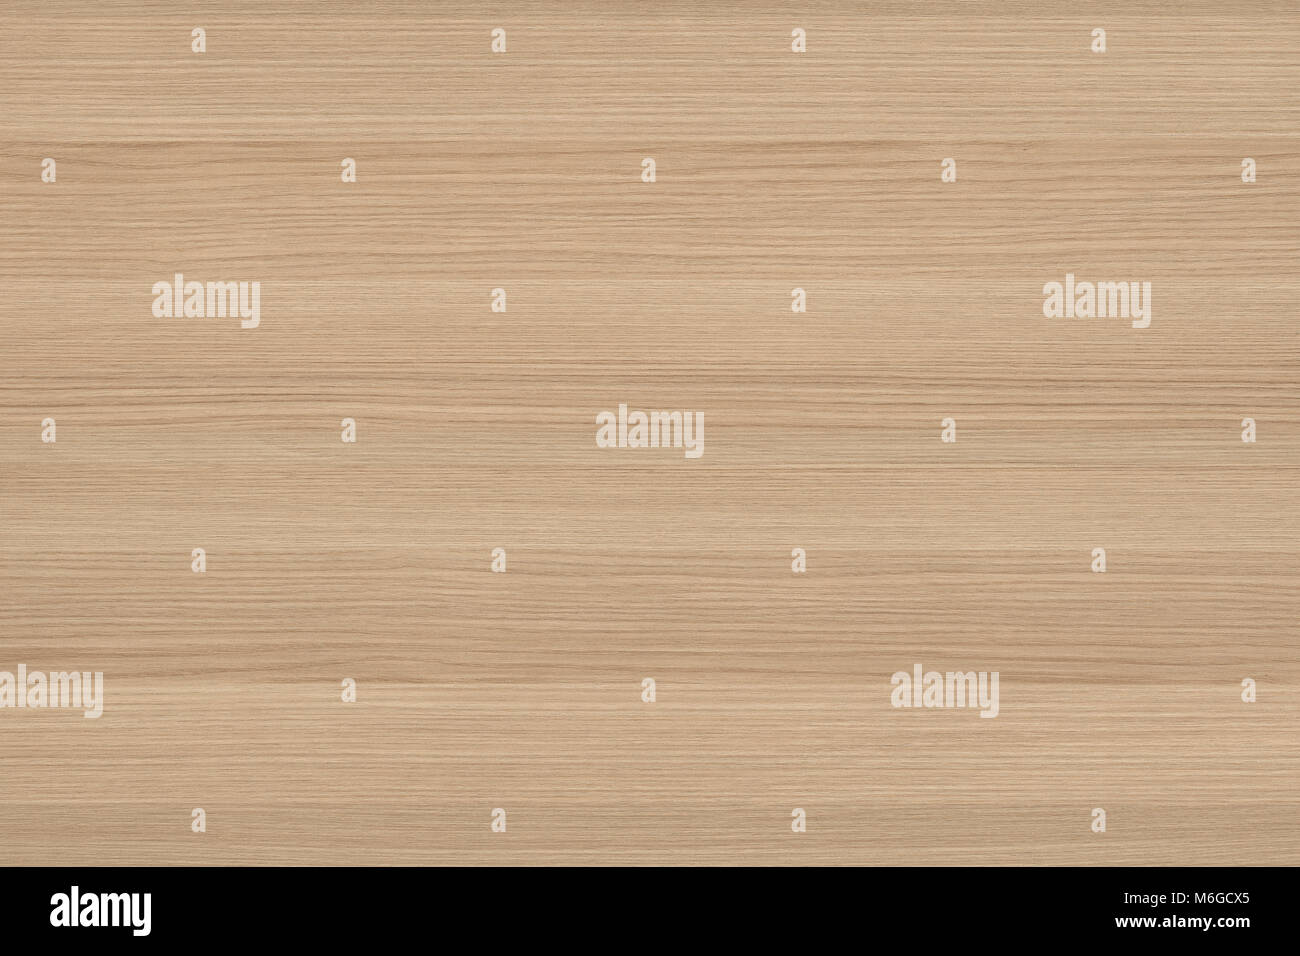 Legno marrone texture. Abstract background. Marrone chiaro graffiato tagliere di legno. Foto Stock